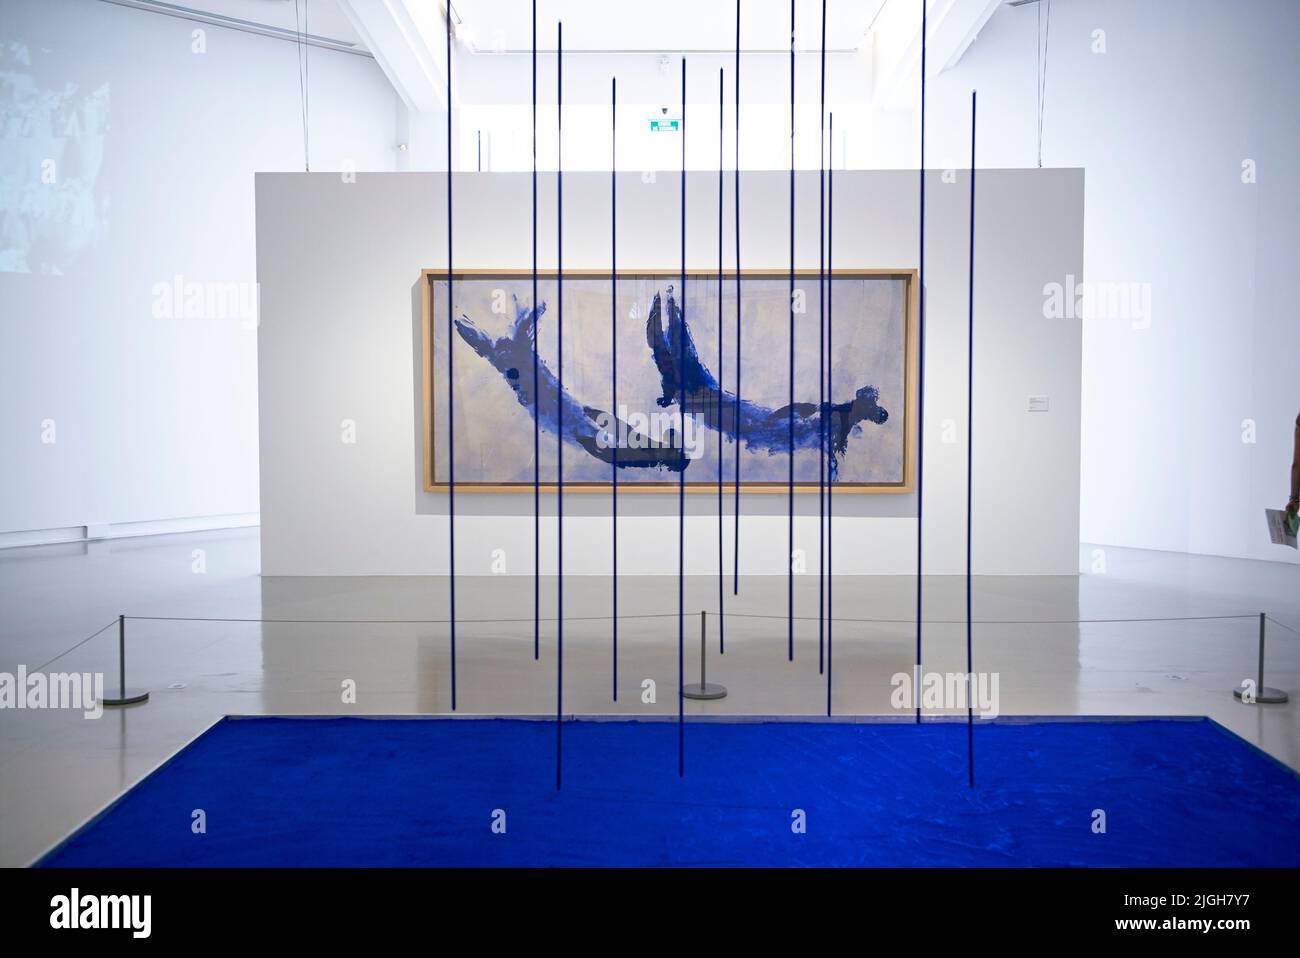 Yves Klein, Monocromo bleu sans titre (IKB Godet), 1958. Museo d'Arte moderna e Contemporanea (MAMAC), Nizza, Francia. Foto Stock